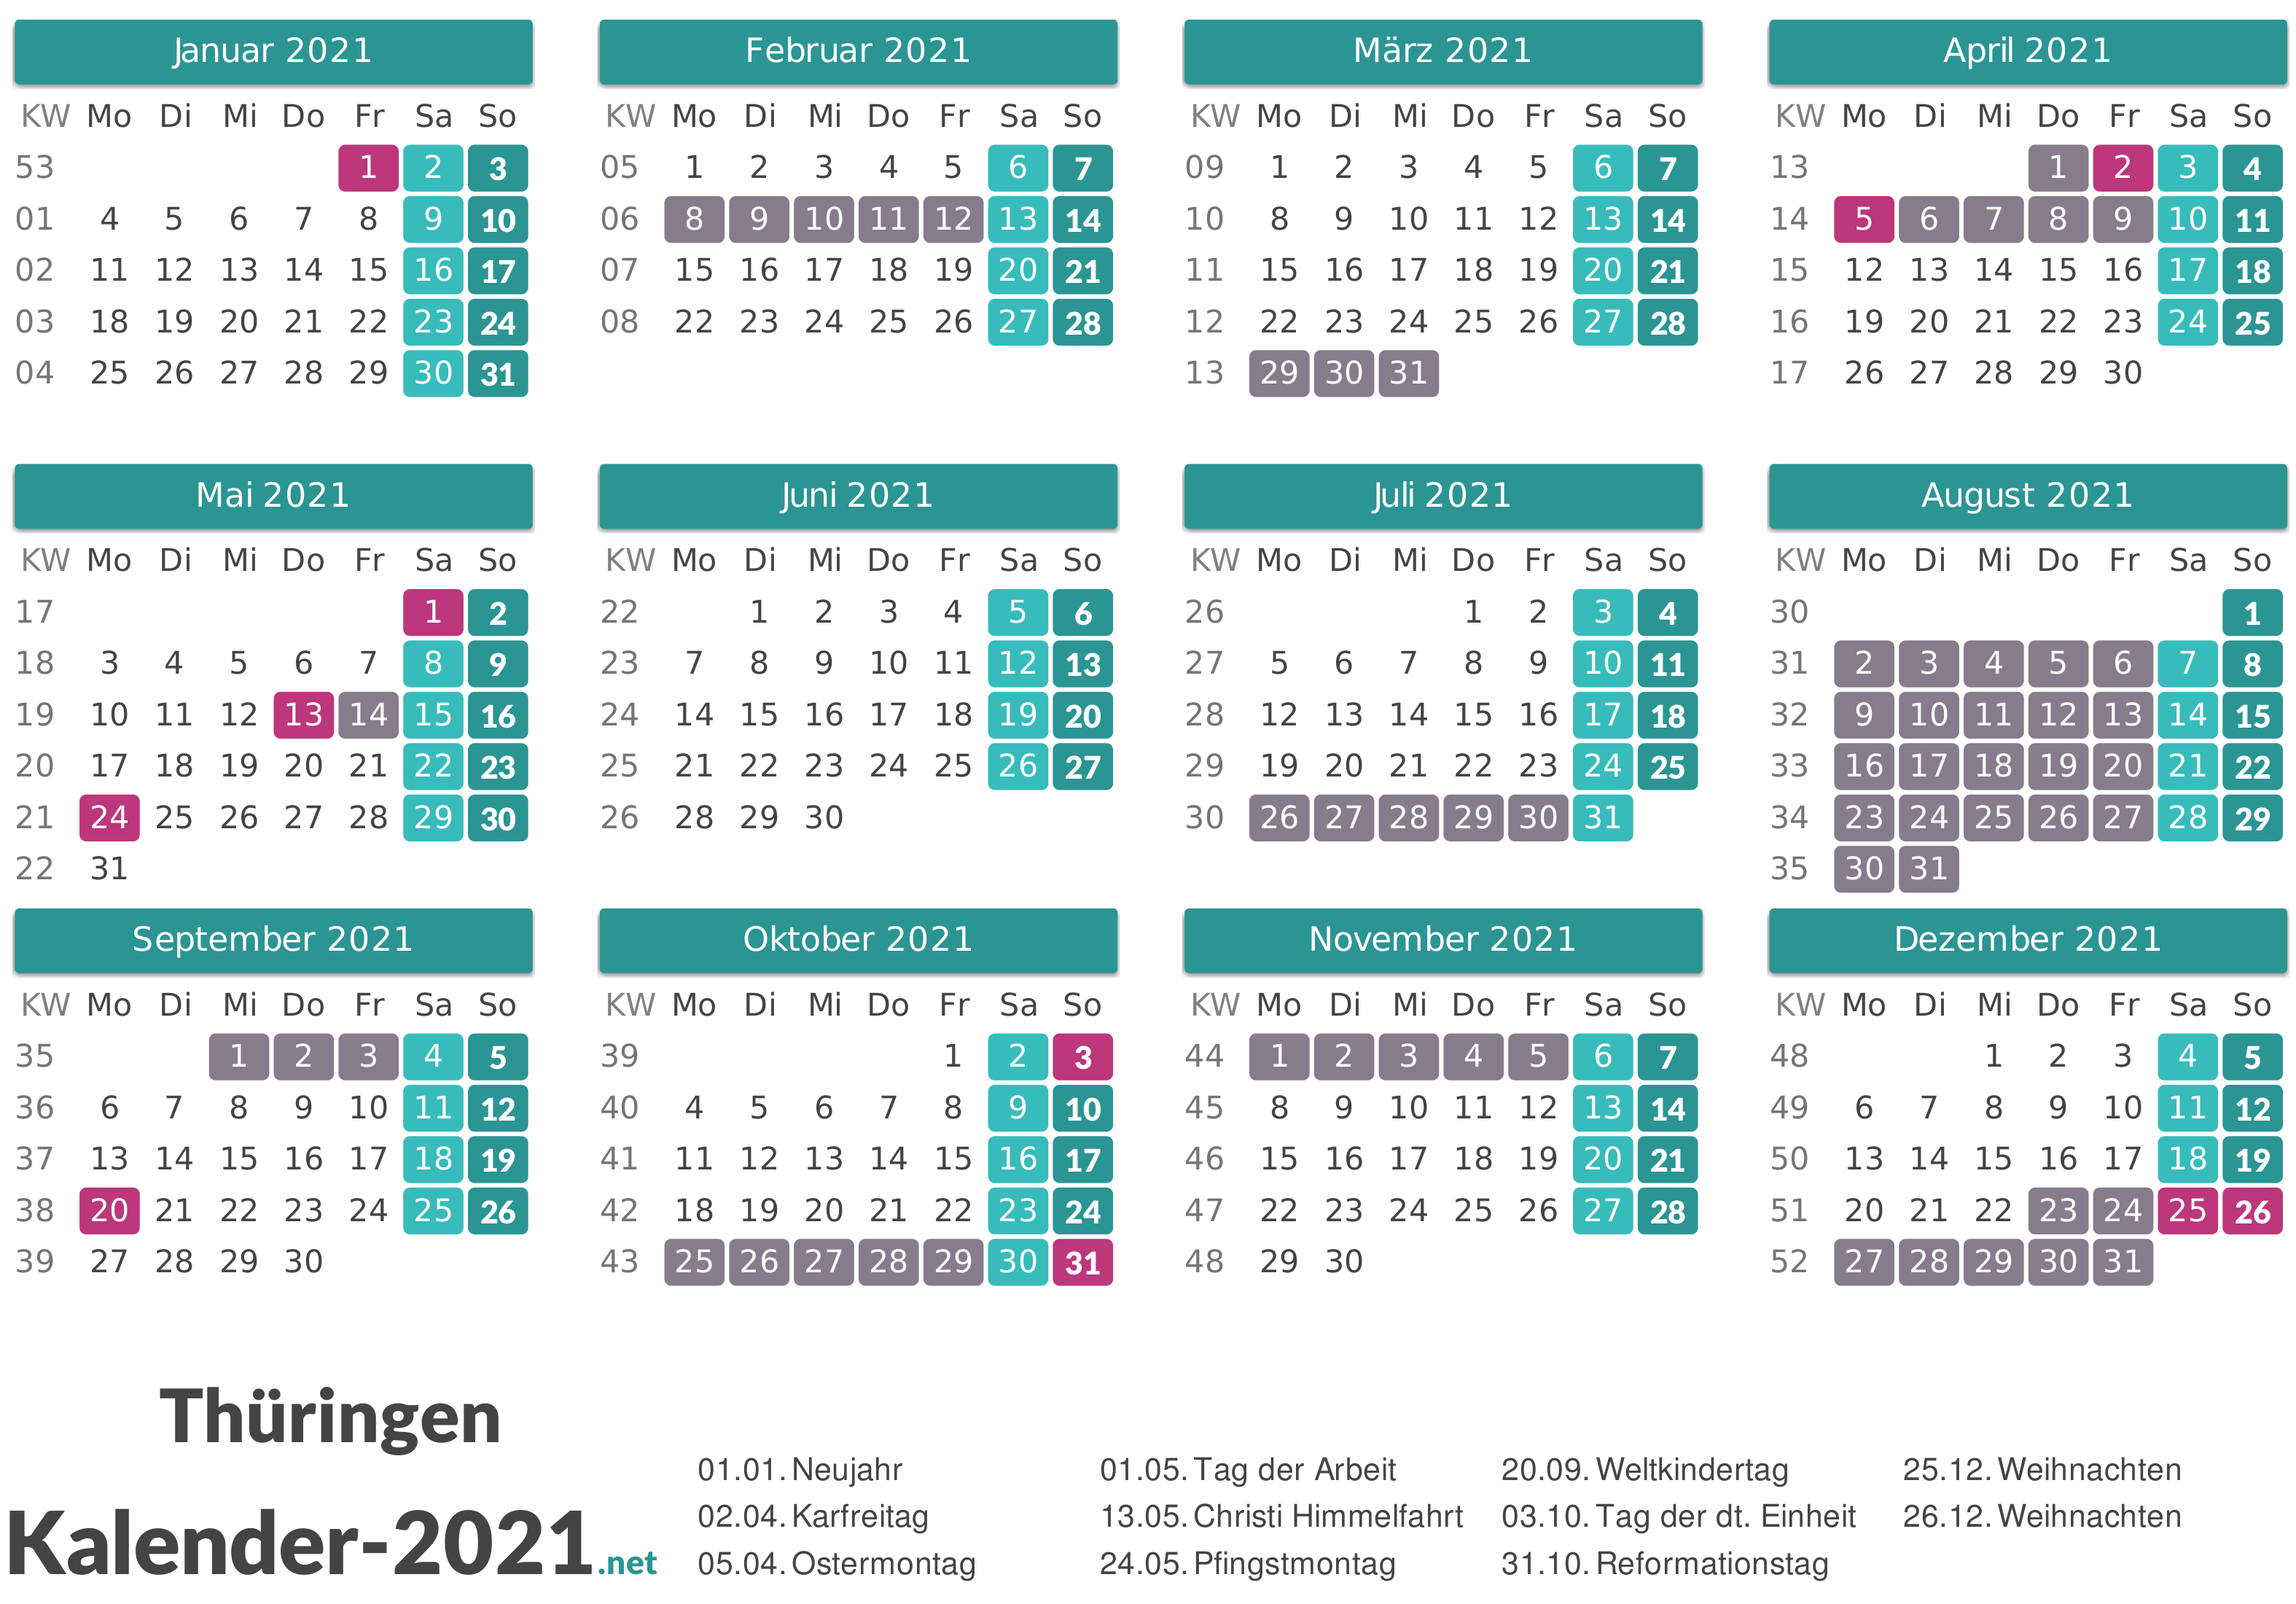 FERIEN Thüringen 2021 - Ferienkalender & Übersicht